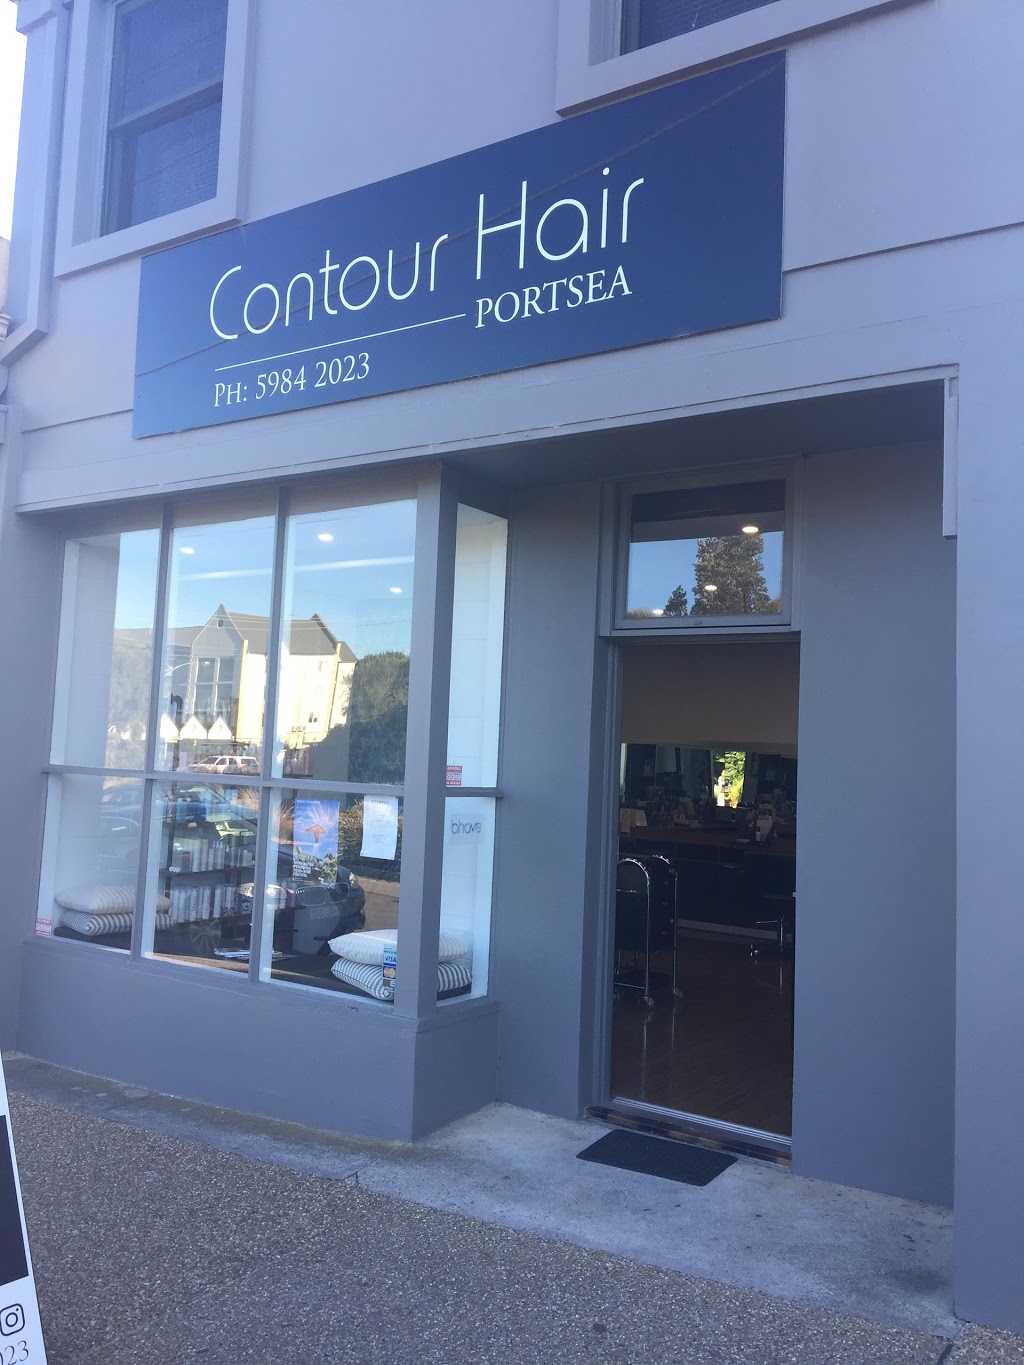 Contour Hair Portsea | 3766 Point Nepean Rd, Portsea VIC 3944, Australia | Phone: (03) 5984 2023